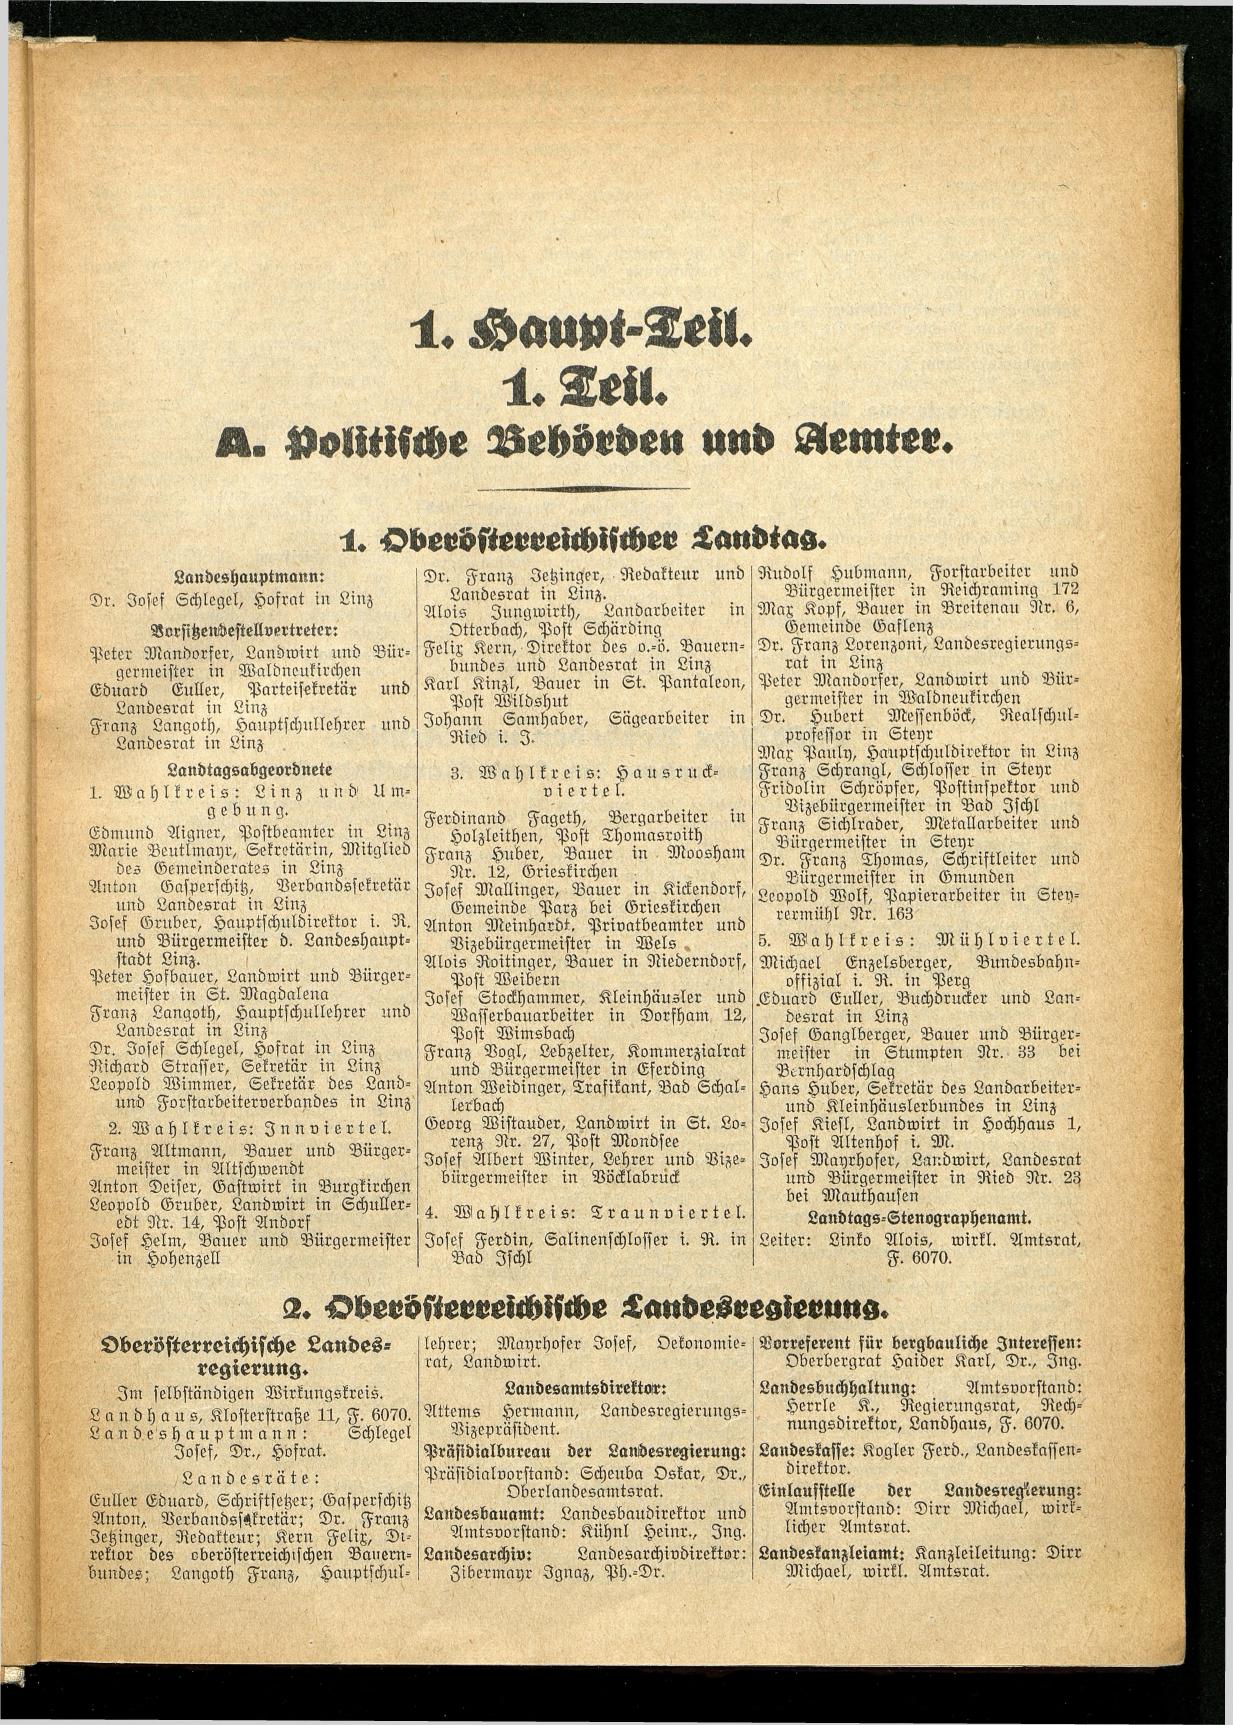 Amtliches Linzer Adreßbuch 1934 - Seite 7